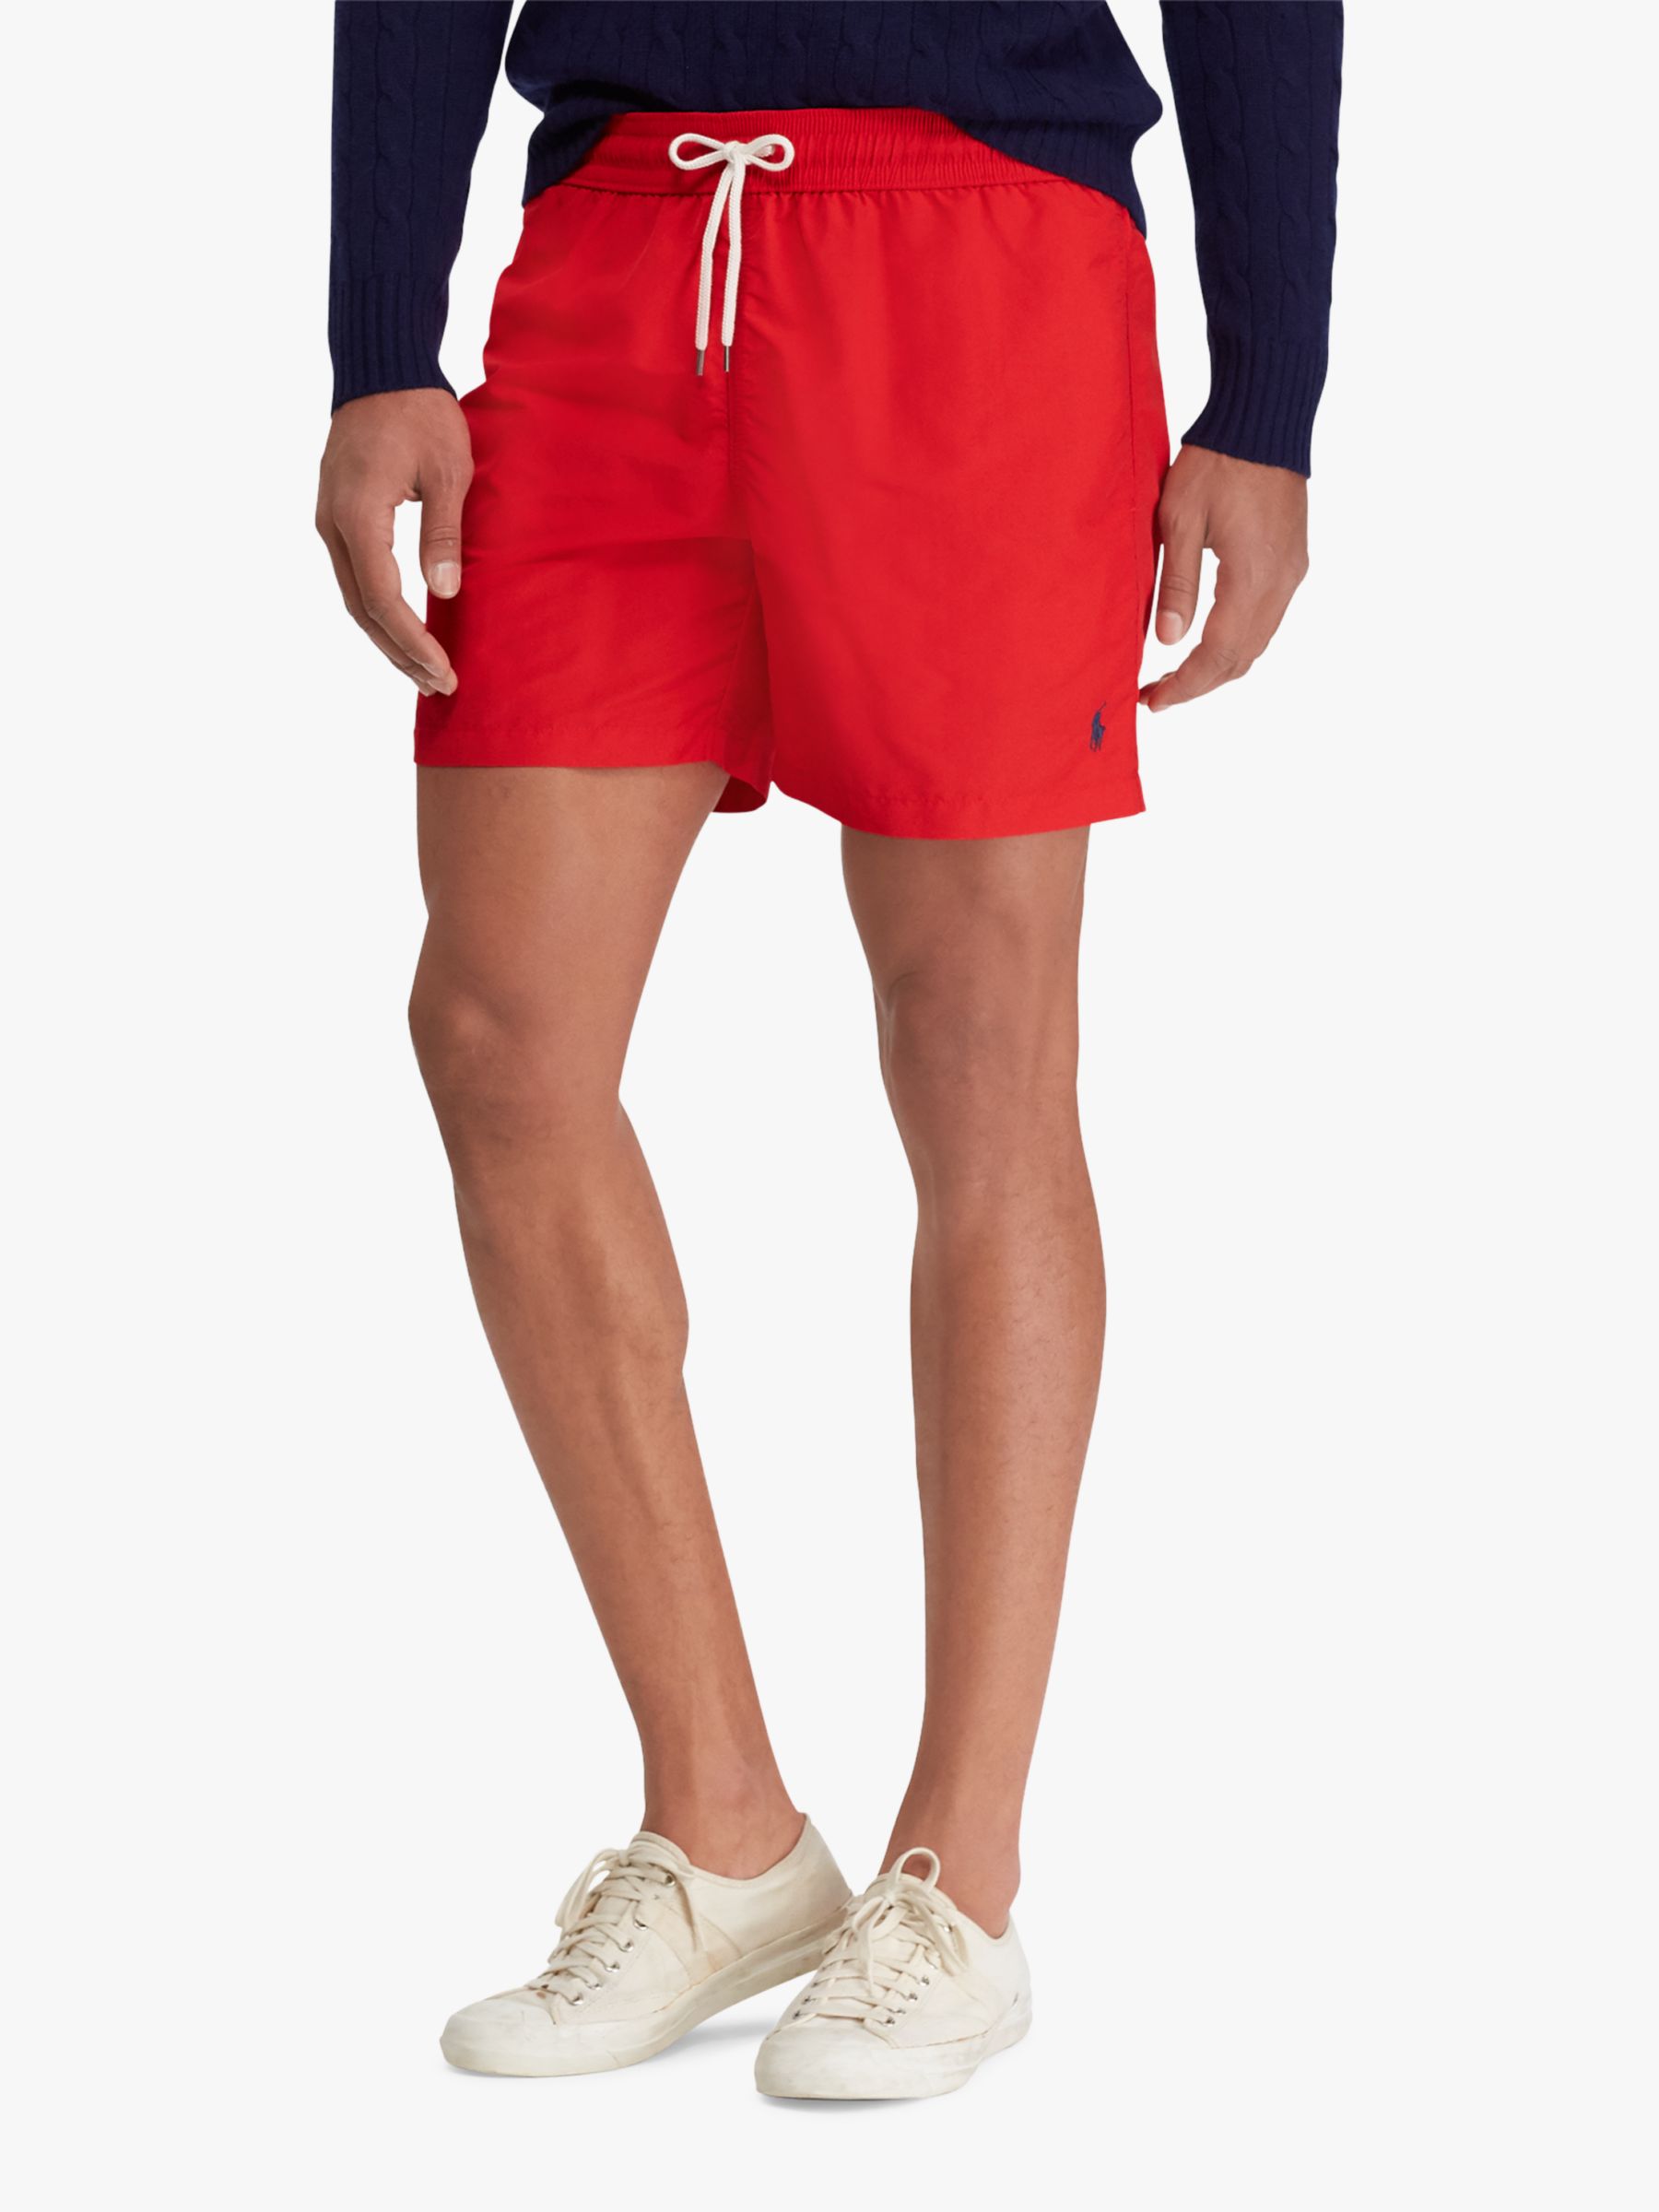 Colored soft swimwear short for Men Europann